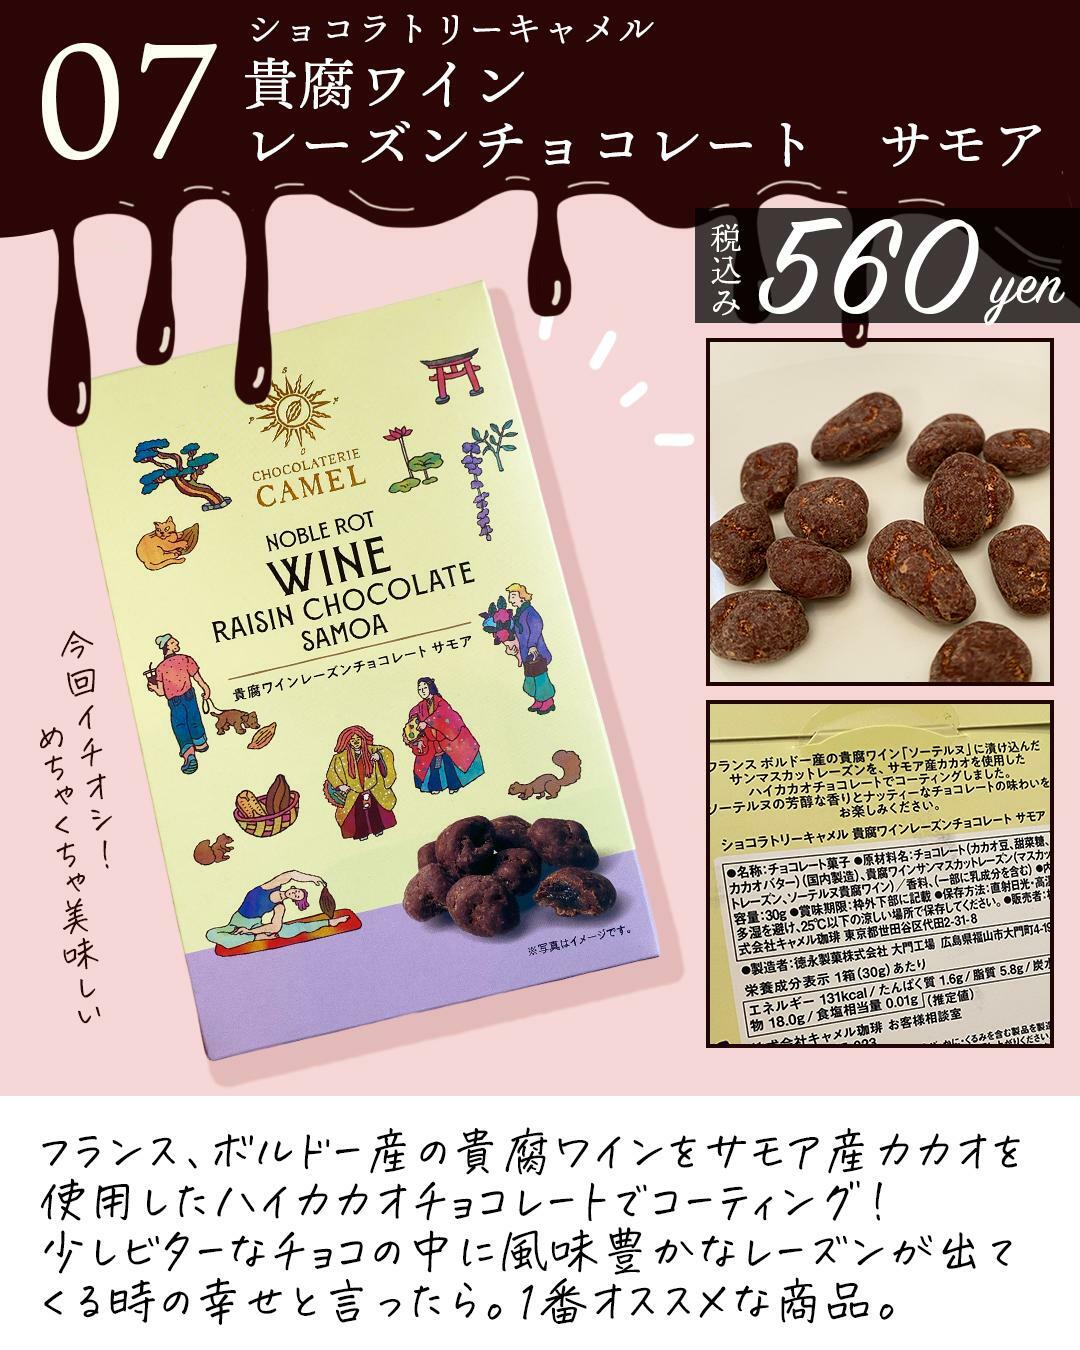 鎌倉に店舗を持つ、ショコラトリーキャメルの貴腐ワインレーズンチョコ